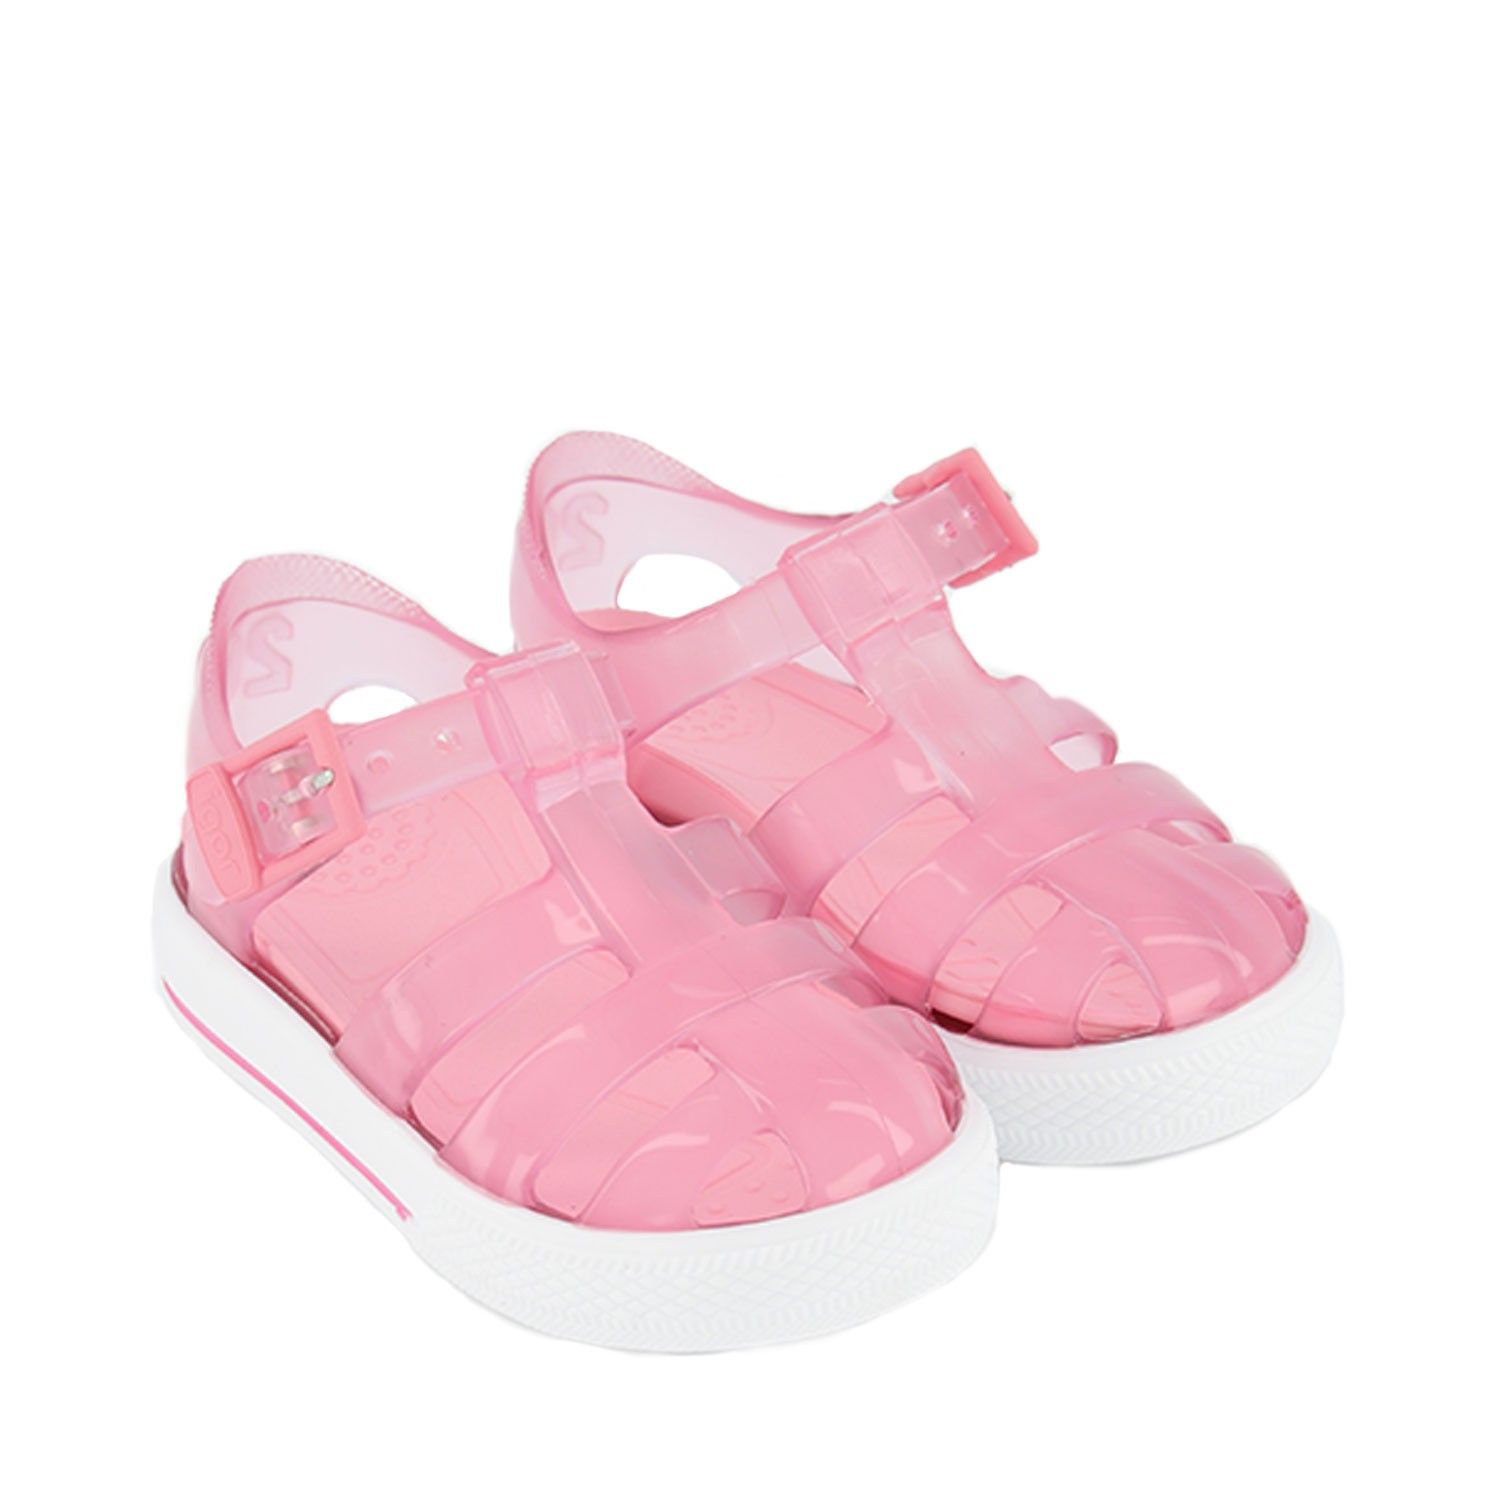 igor sandals pink